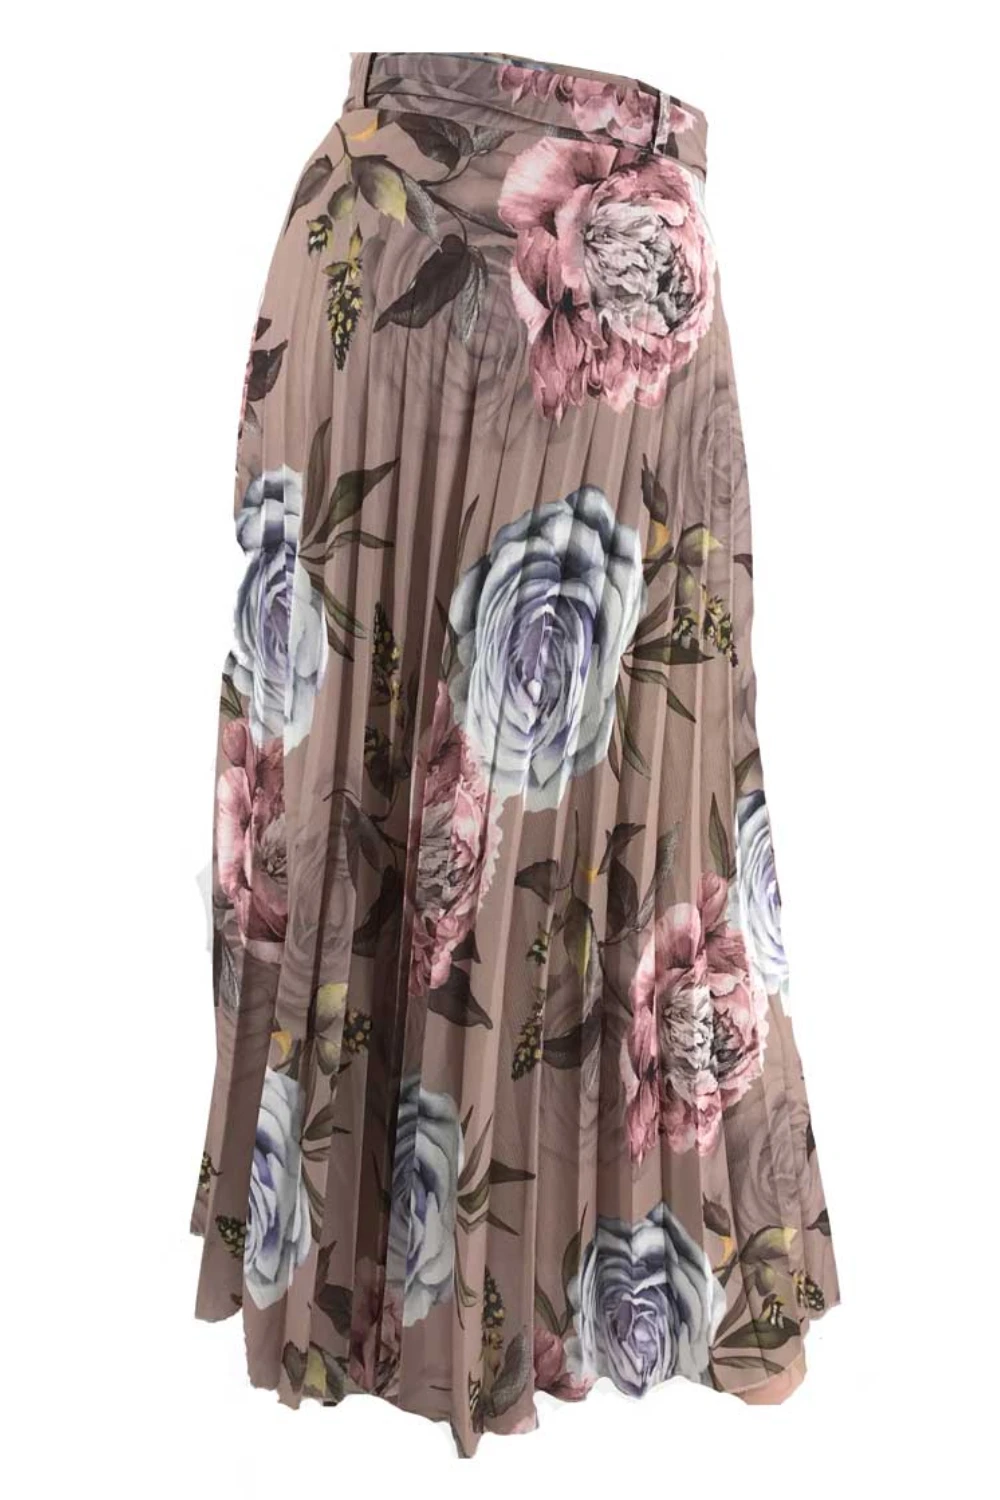 Ruksana Printed Skirt